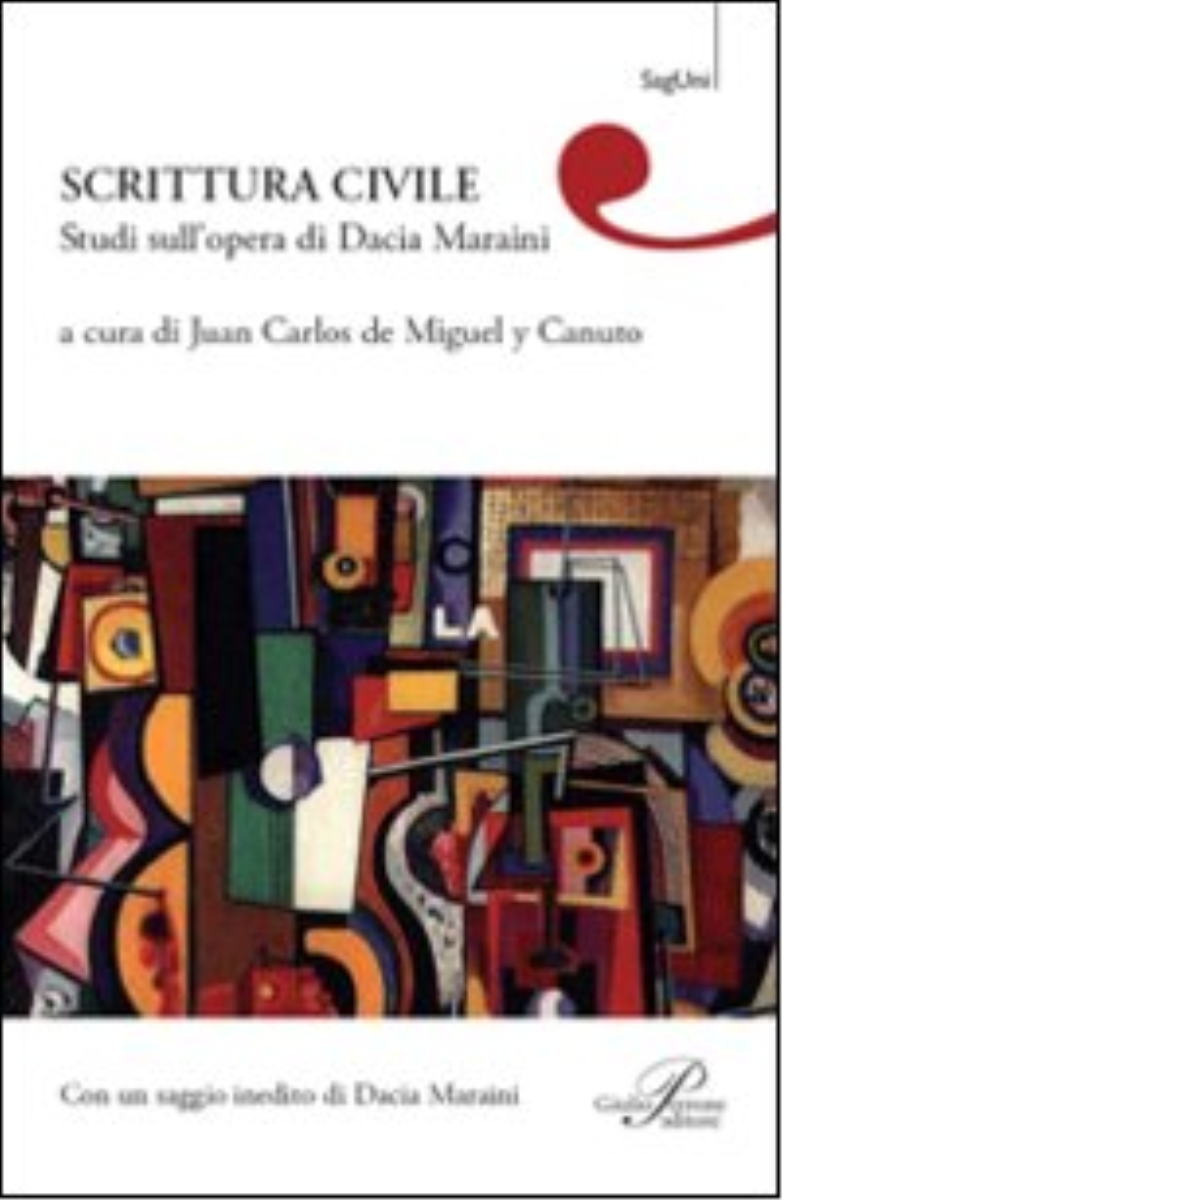 Scrittura civile. Studi sull'opera di Dacia Maraini- Miguel y Canuto J. C. -2010 libro usato